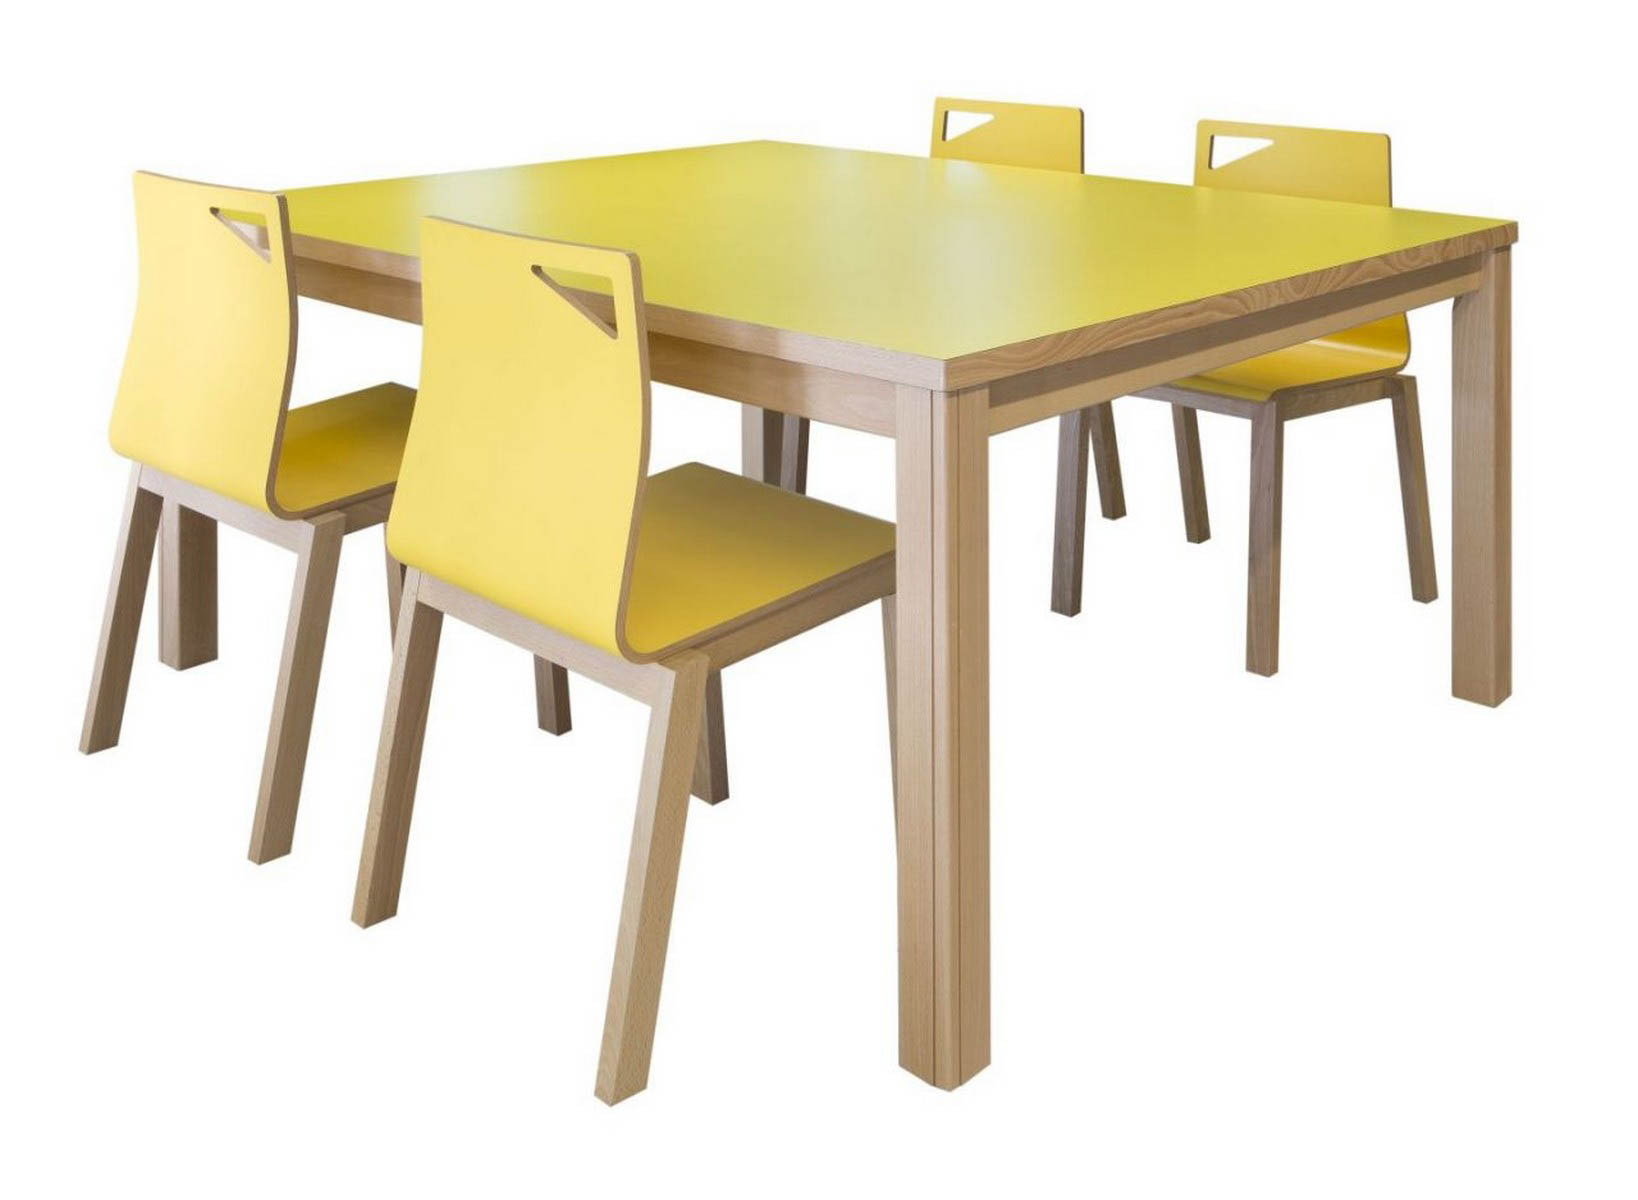 METALUNDIA BRECHT Une table qui apporte une touche chaleureuse et conviviale à nos bibliothèques grâce à sa structure en bois, bien qu’elle puisse s’adapter aussi bien aux décors classiques qu’aux installations contemporaines, grâce à la variété de couleurs avec lesquelles nous pouvons jouer sur ses couvertures